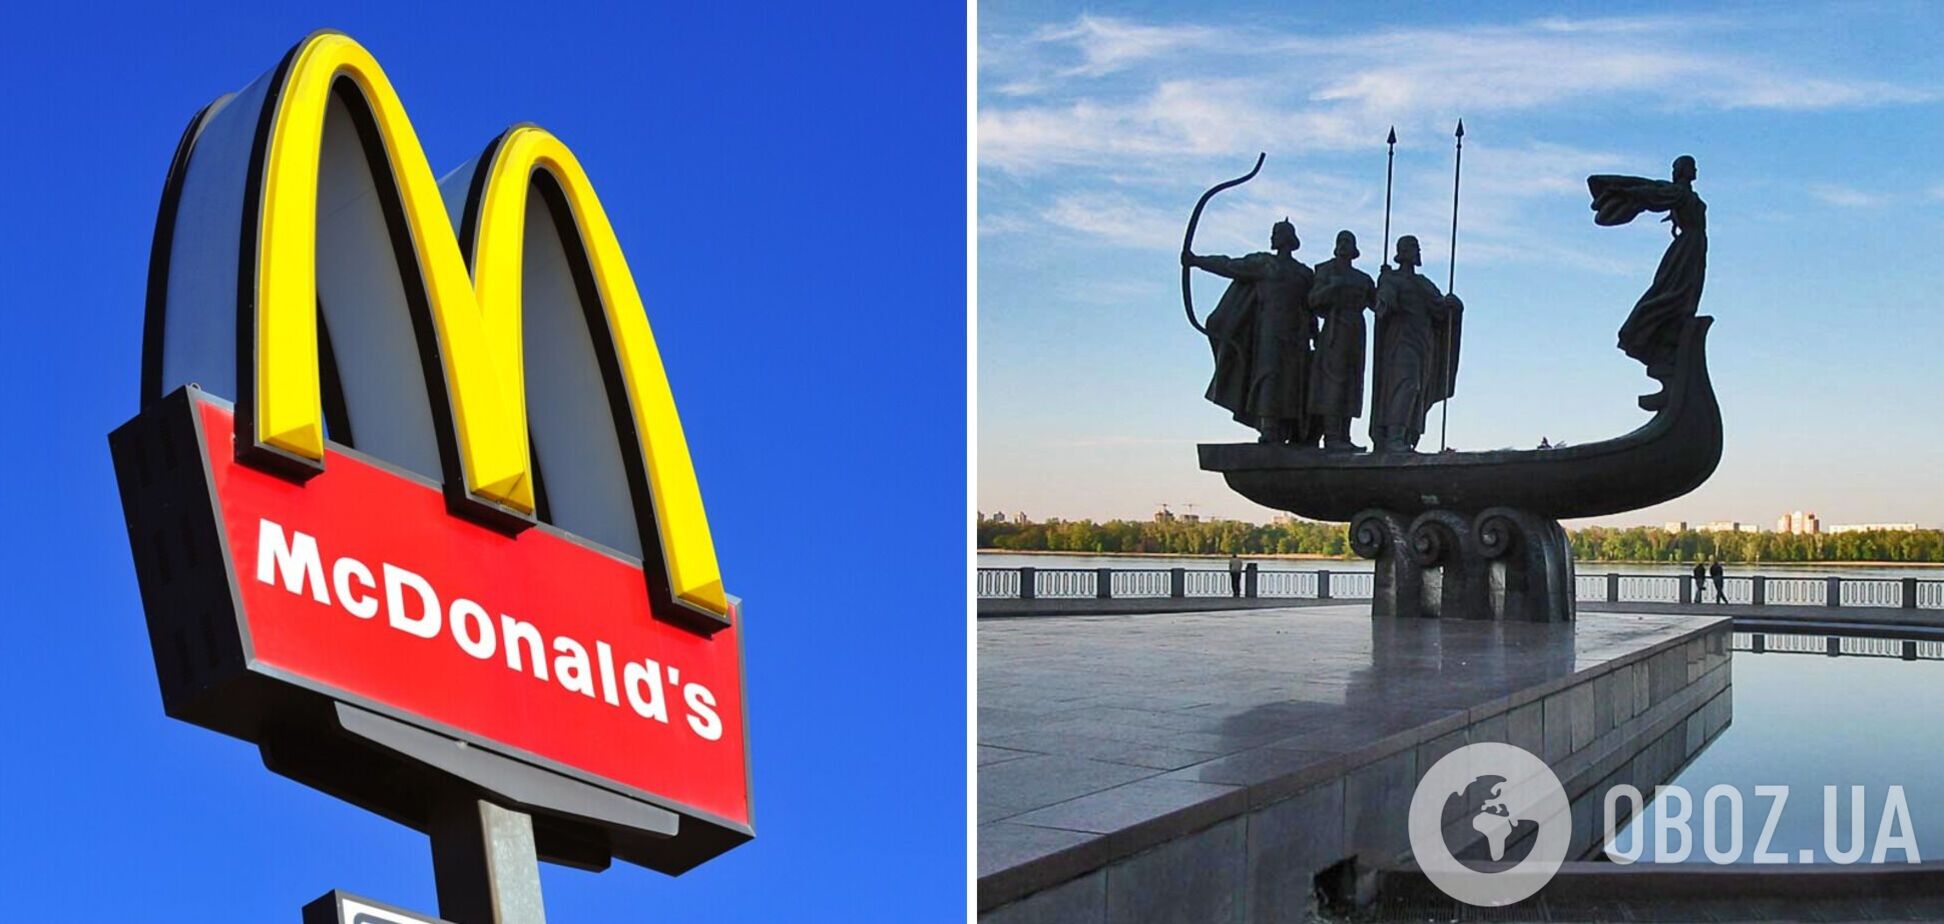 Точної дати відкриття McDonald's у Києві немає